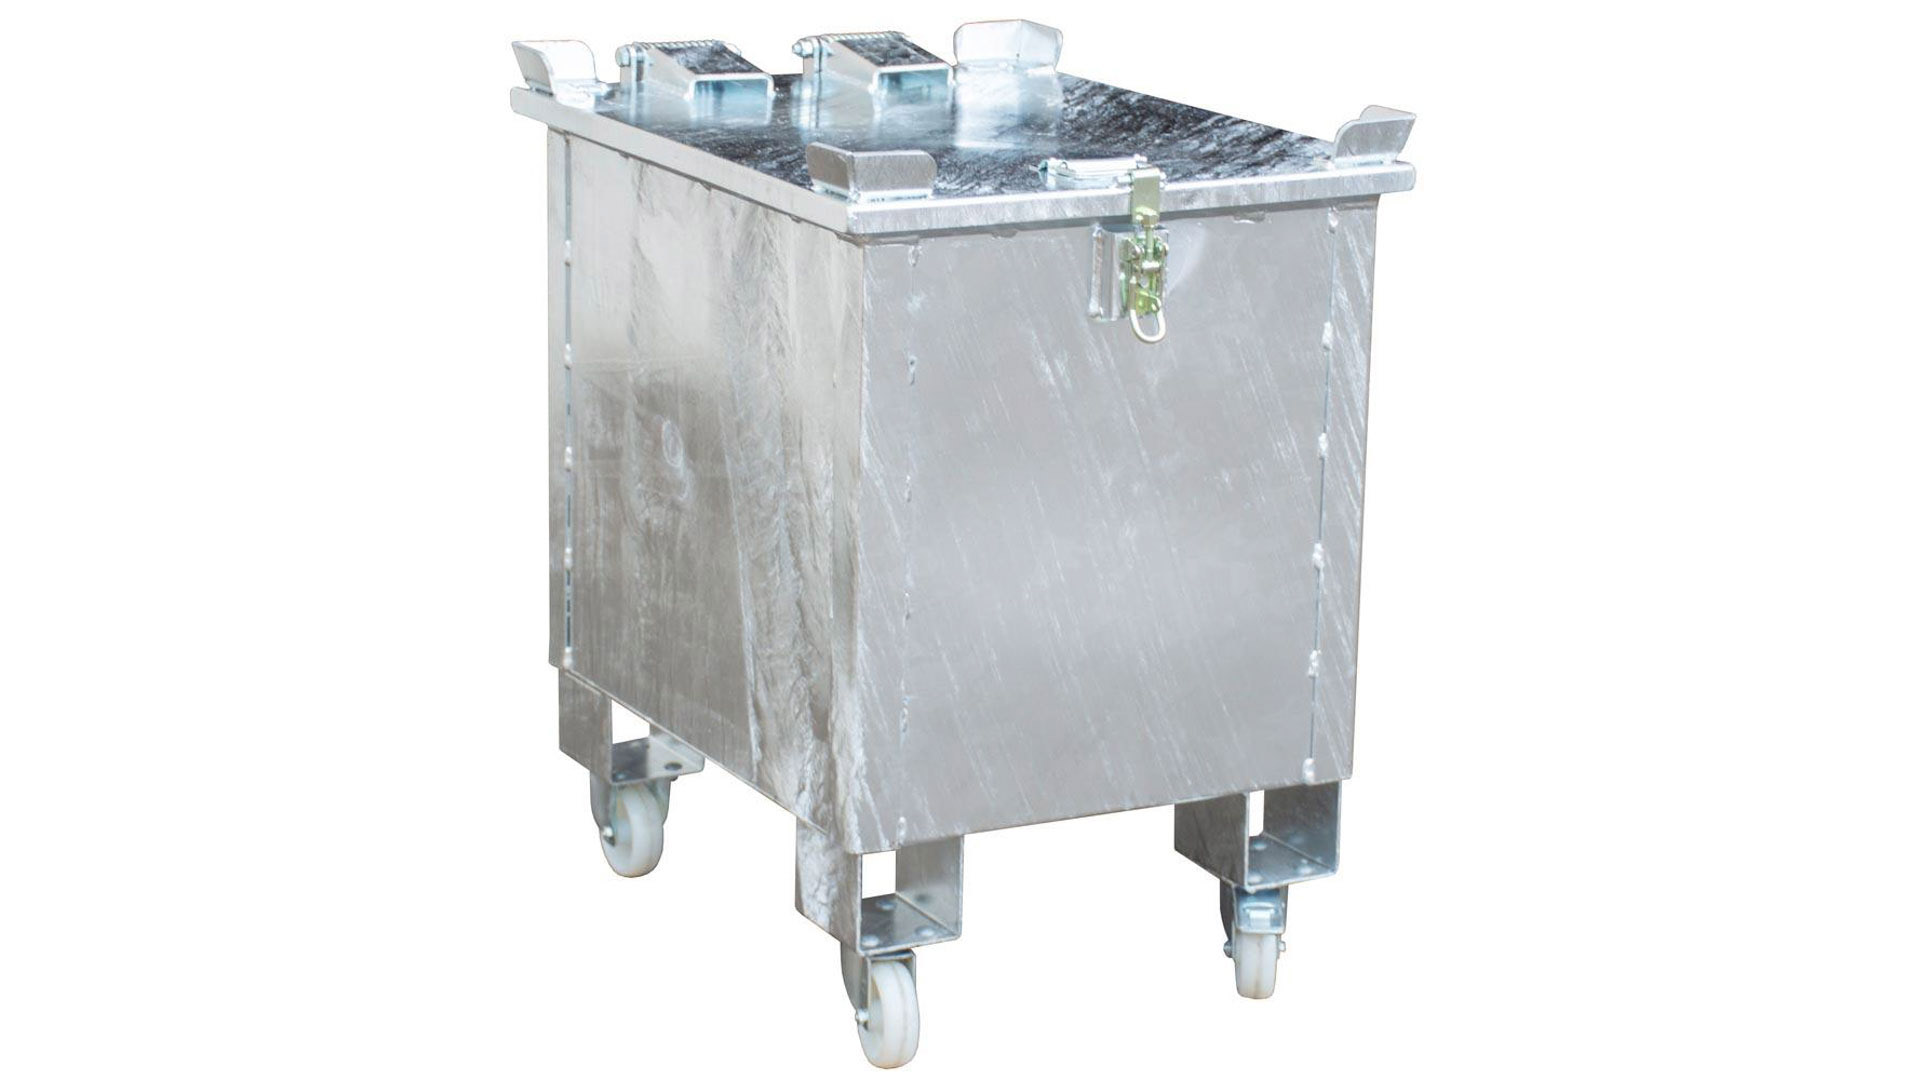 Lithium-Ionen-Lagerbehälter, 90 Liter, verzinkt, BxTxH 800x600x750 mm